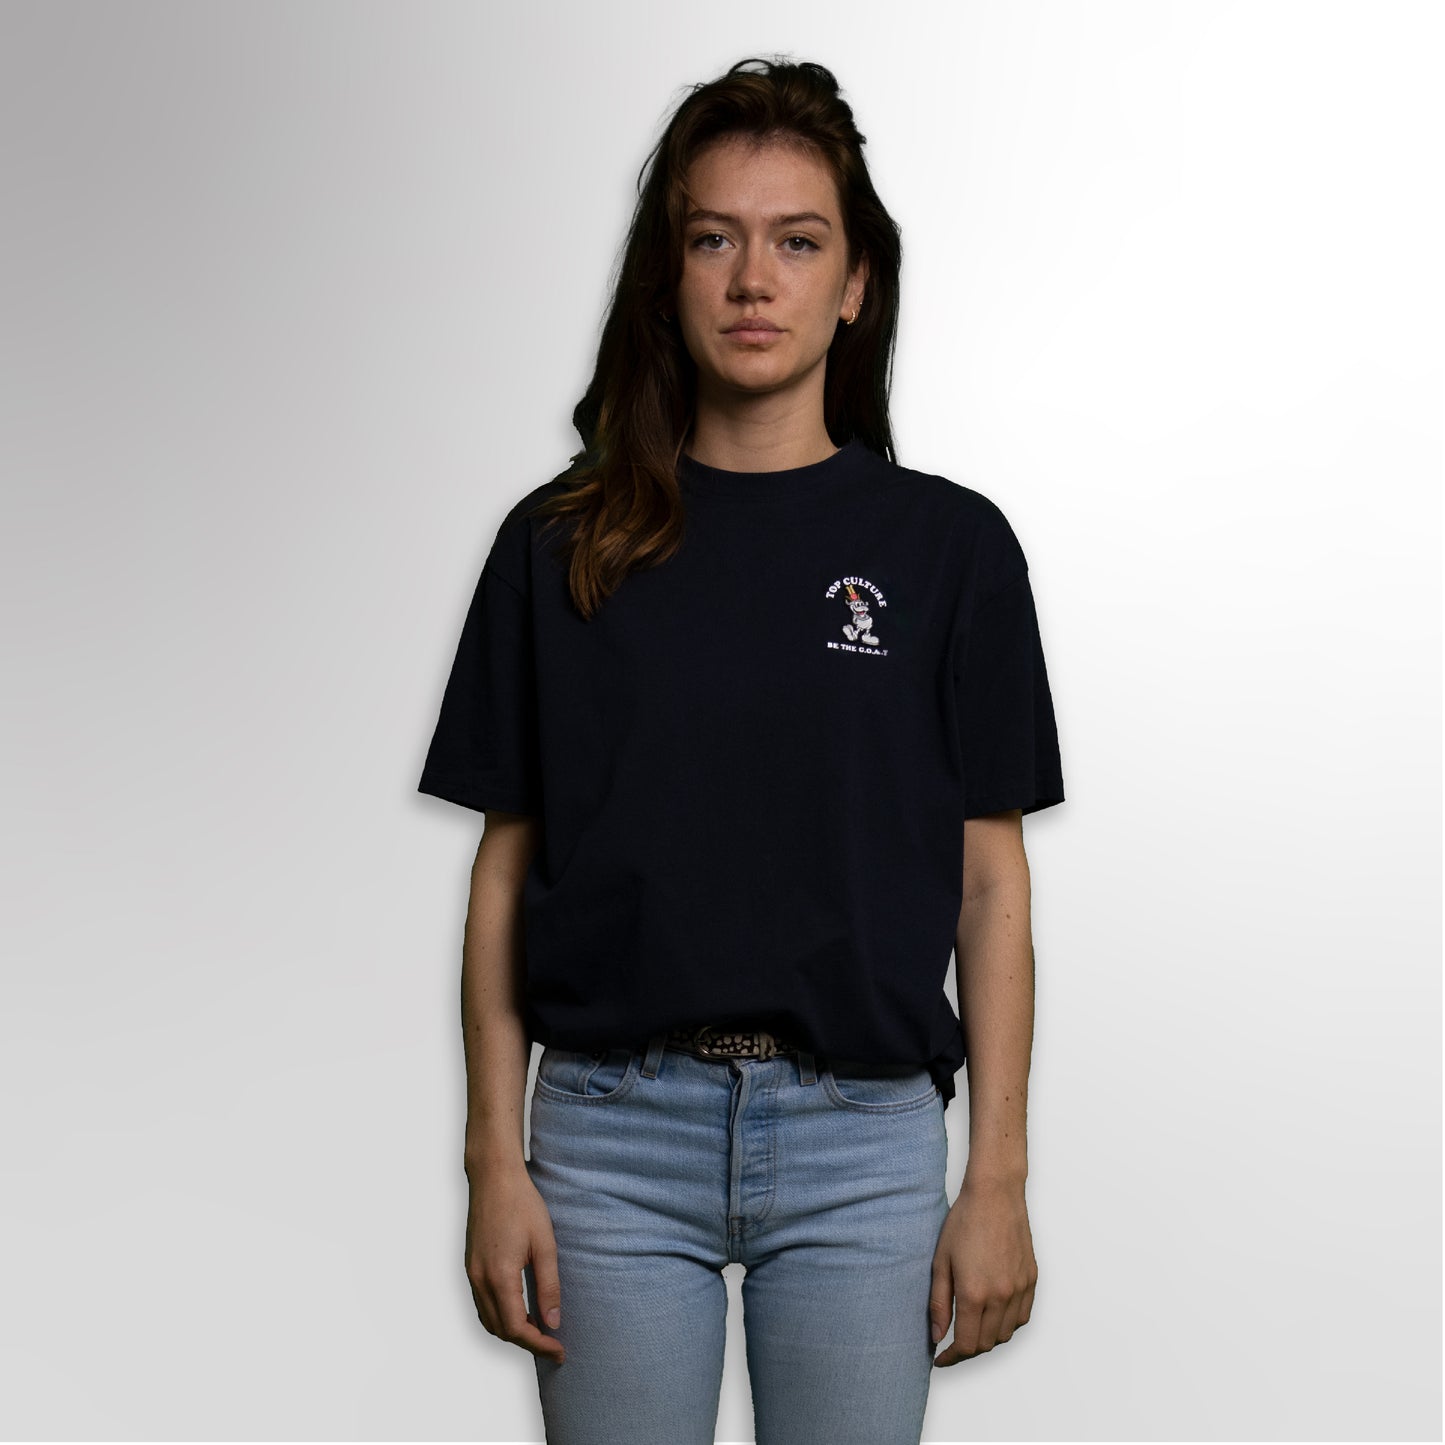 G.o.a.t. navy t-shirt women